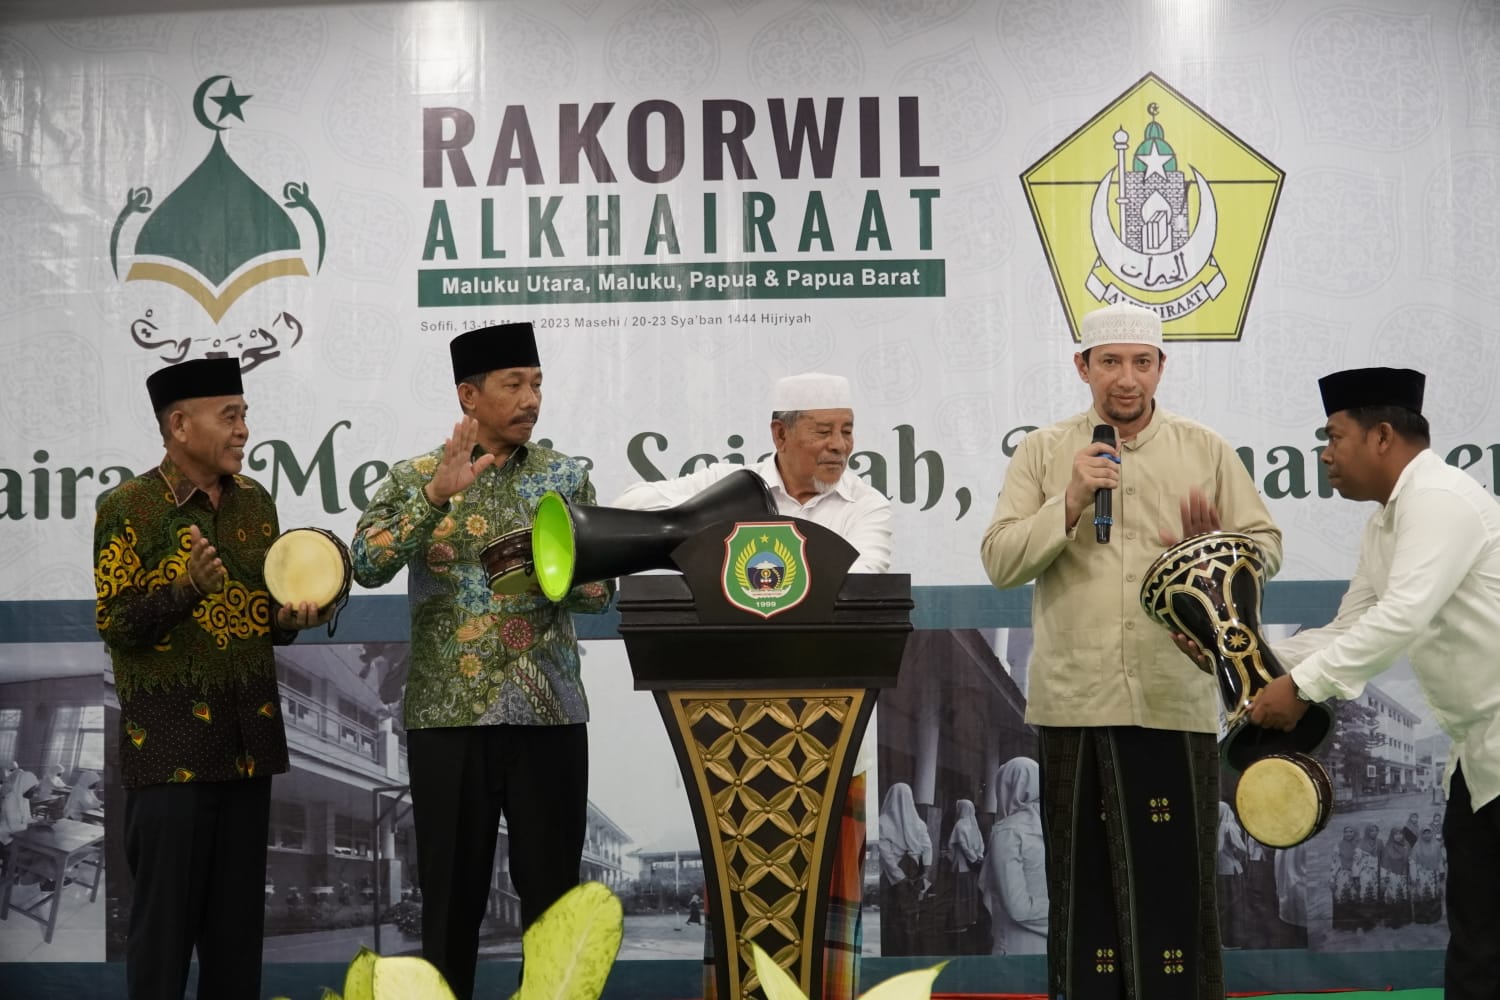 Buka Rakorwil Alkhairat, Gubernur AGK Ingatkan Persatuan Ditengah Perbedaan